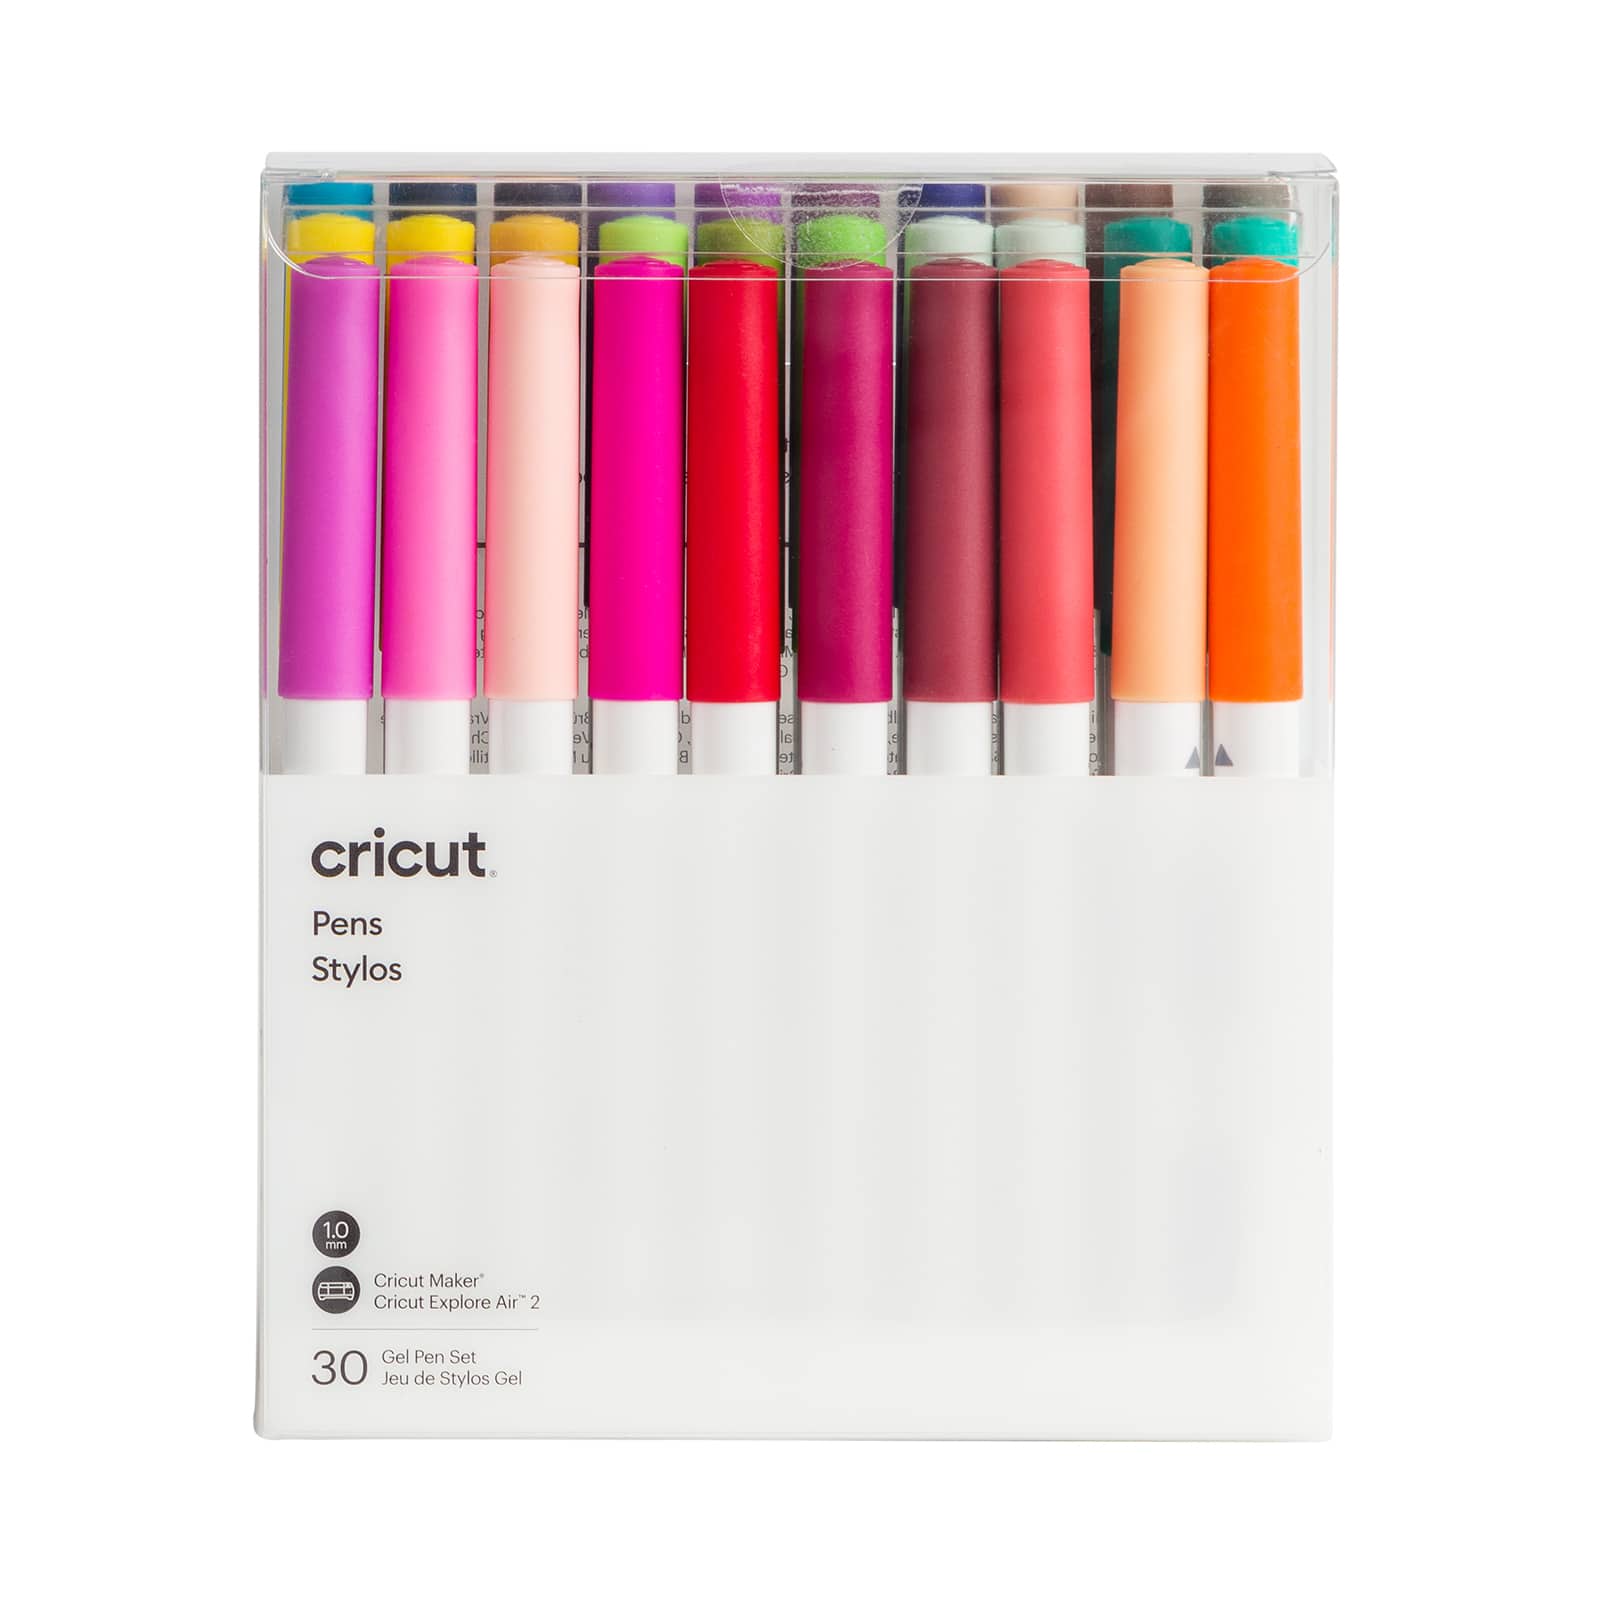 6 Packs: 30 ct. (180 total) Cricut&#xAE; Ultimate Gel Pen Set